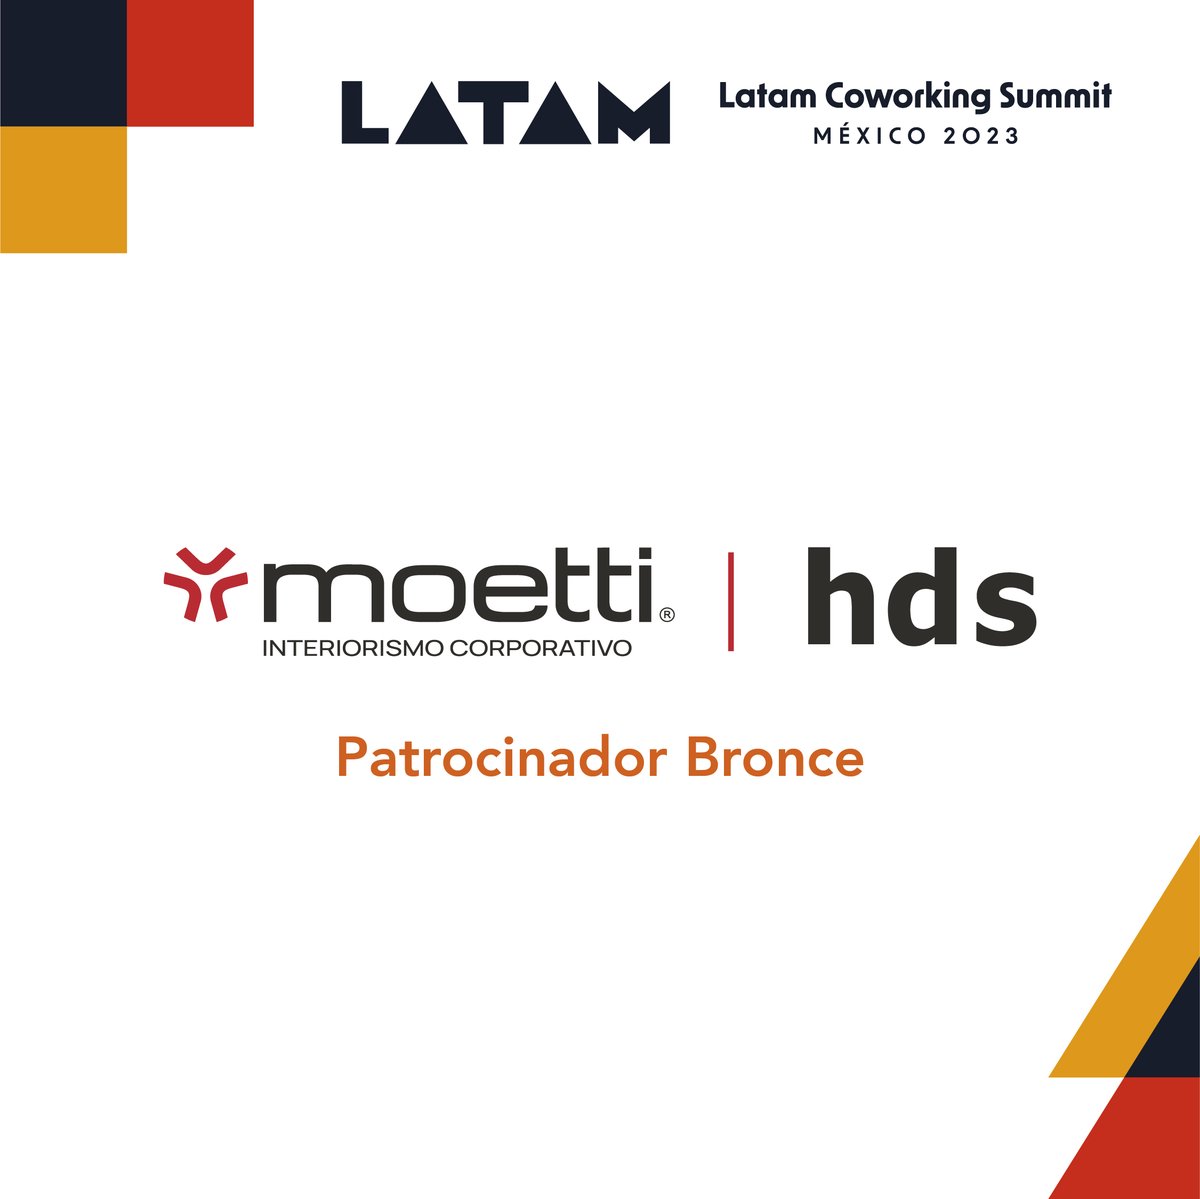 ¡Gracias a @Moettimx por ser Patrocinador Bronce de #LCS23!💥Empresa mexicana con 30 años de experiencia fabricando y comercializando mobiliario de vanguardia para distintos espacios. Conoce más en moetti.com👈🏽

¡Forma parte de #LCS! Info en latamsummit.co